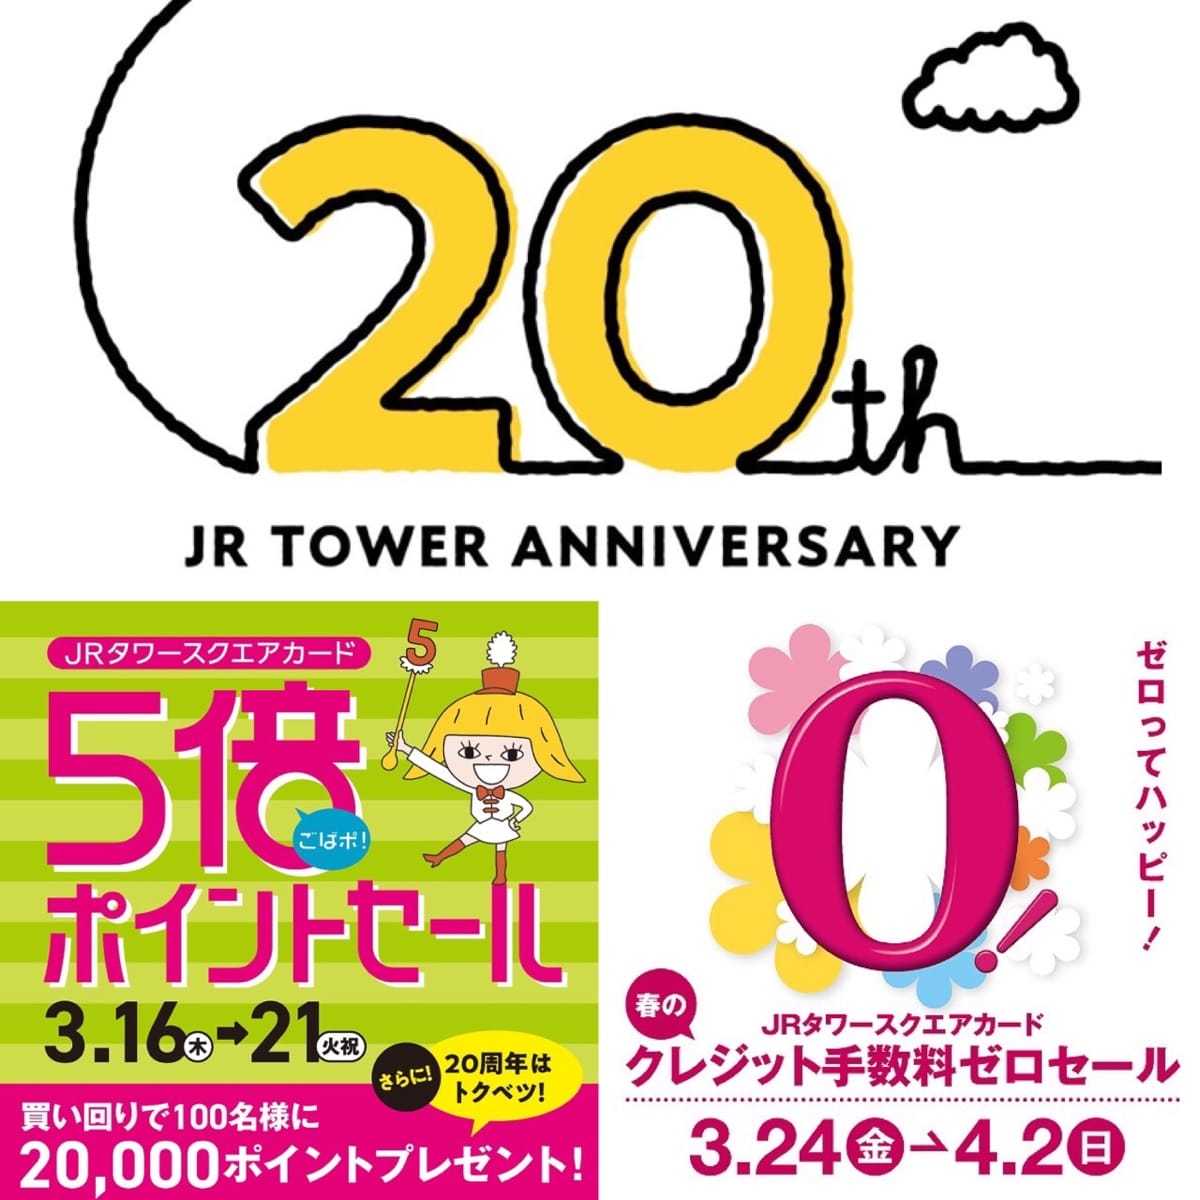 周年祭/JRタワースクエアカードのイベントお知らせ☆